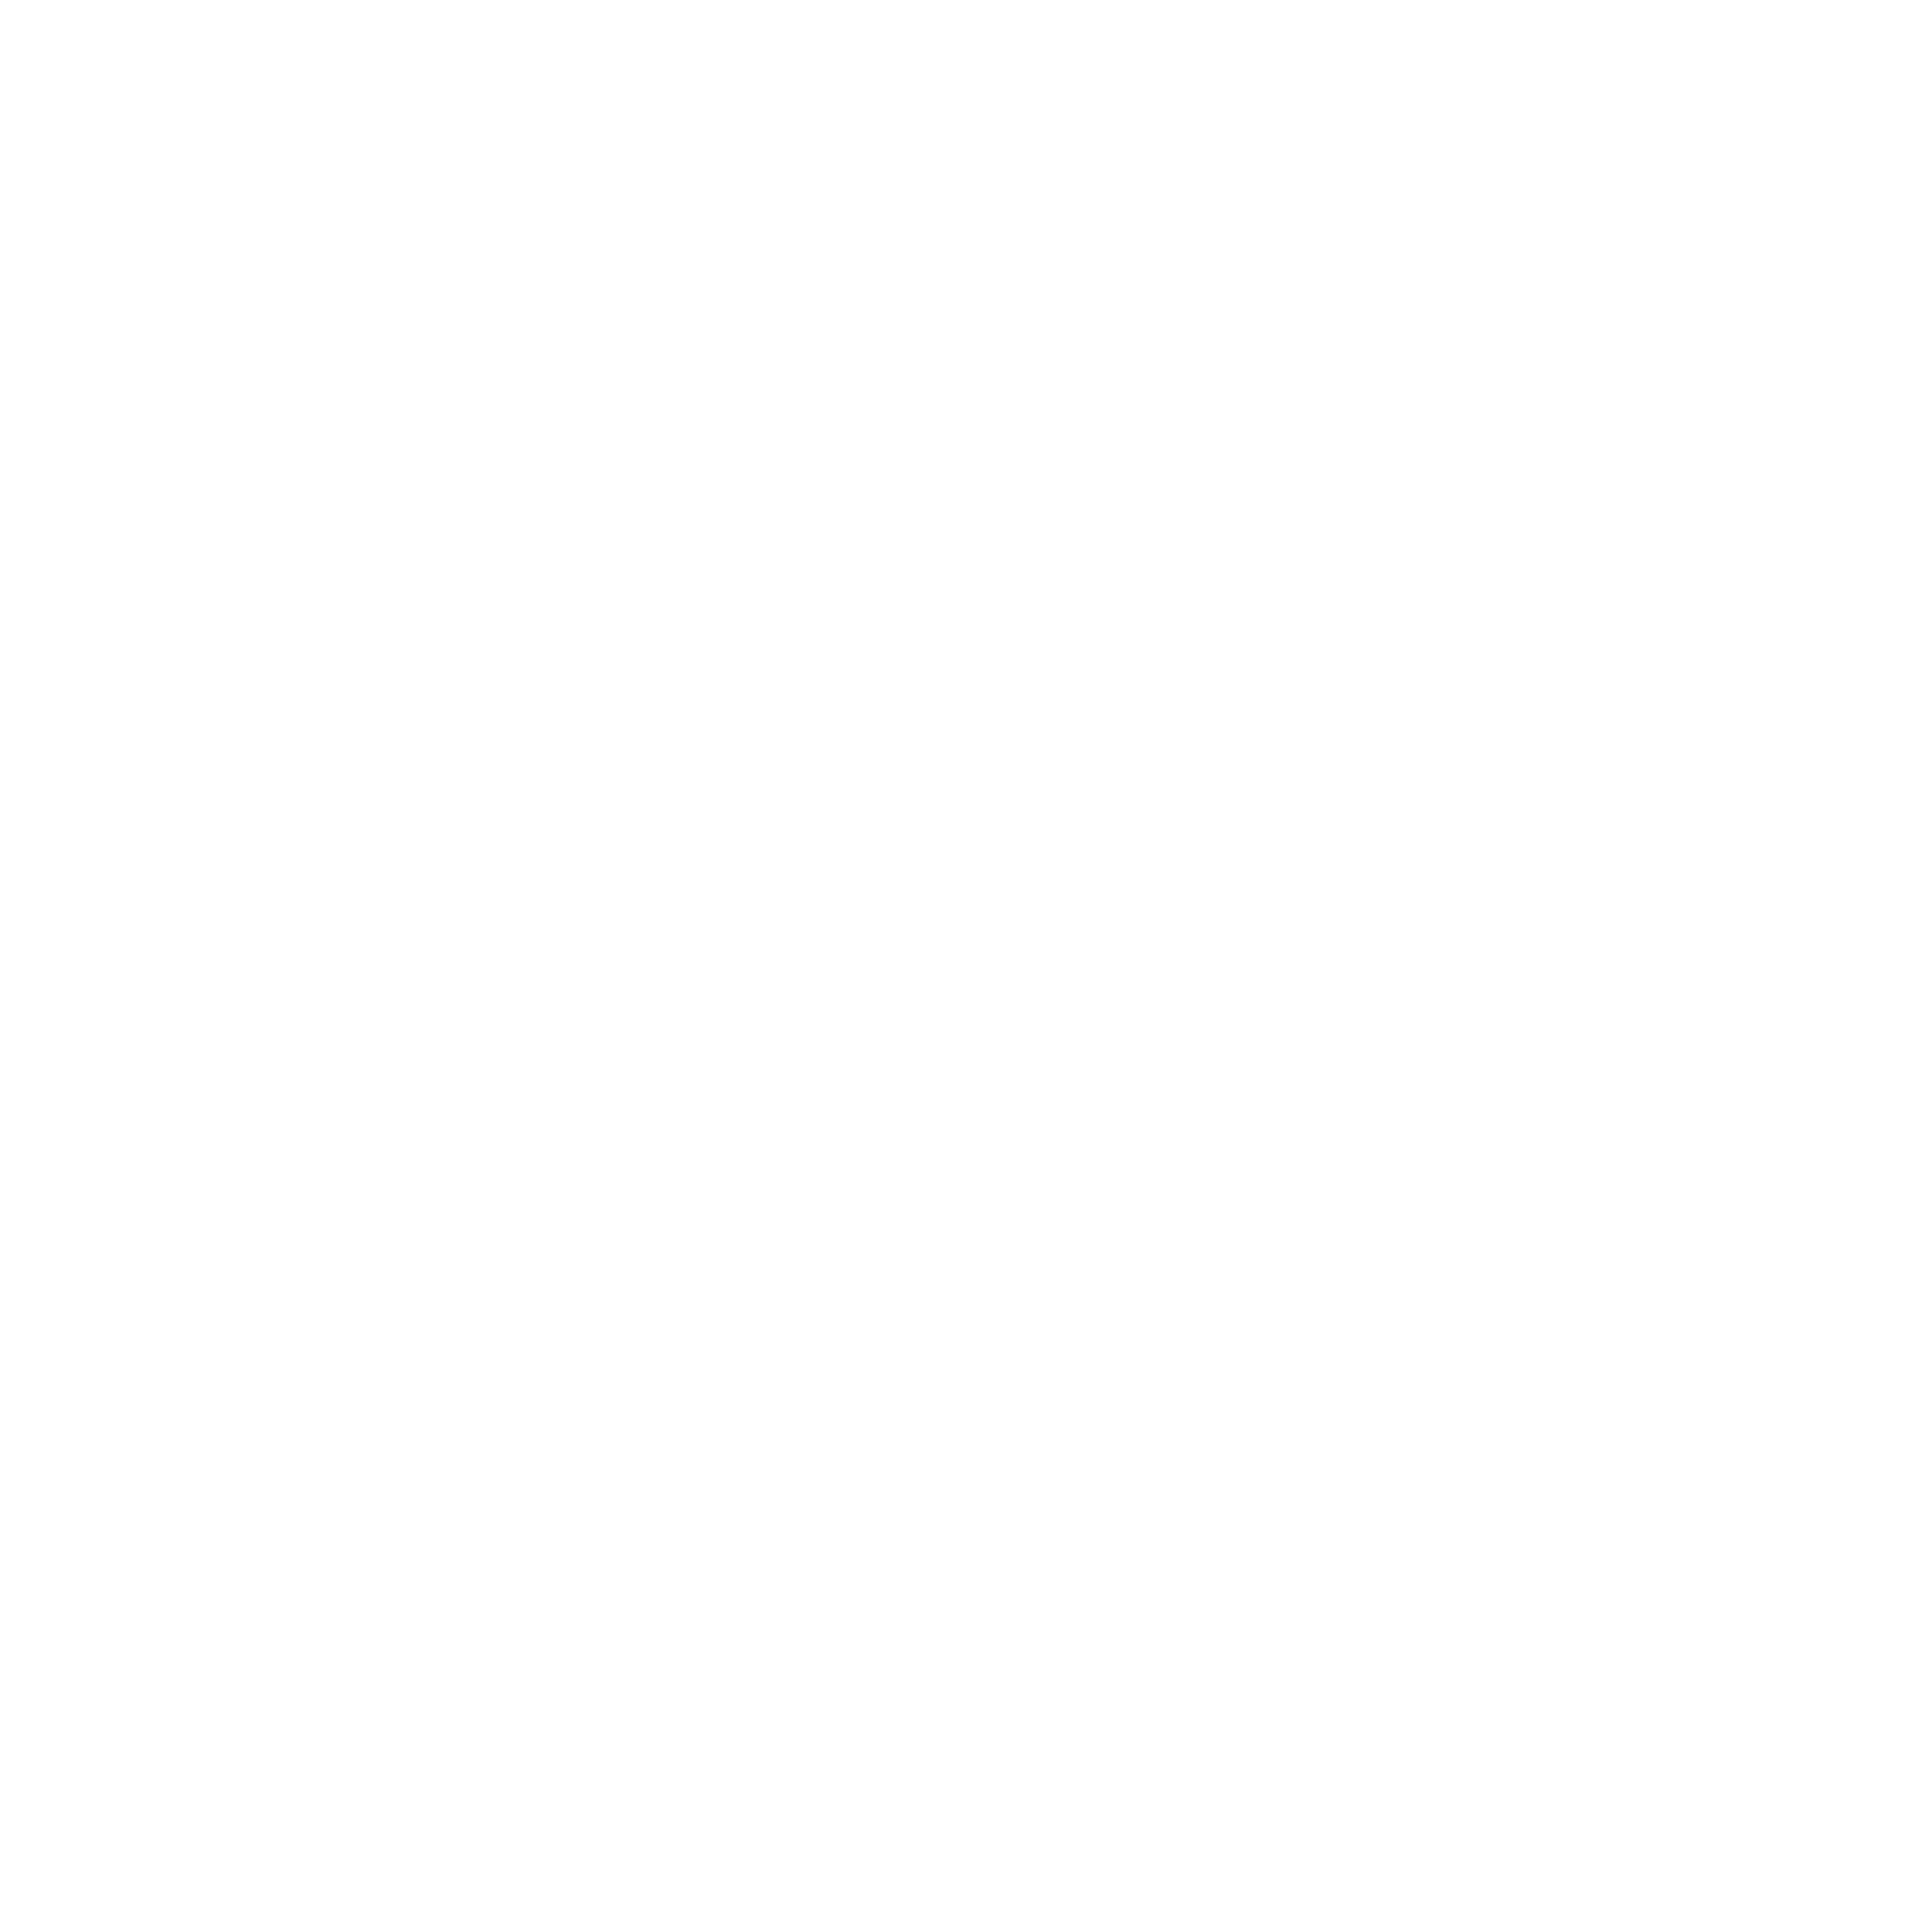 o logo_00000.png